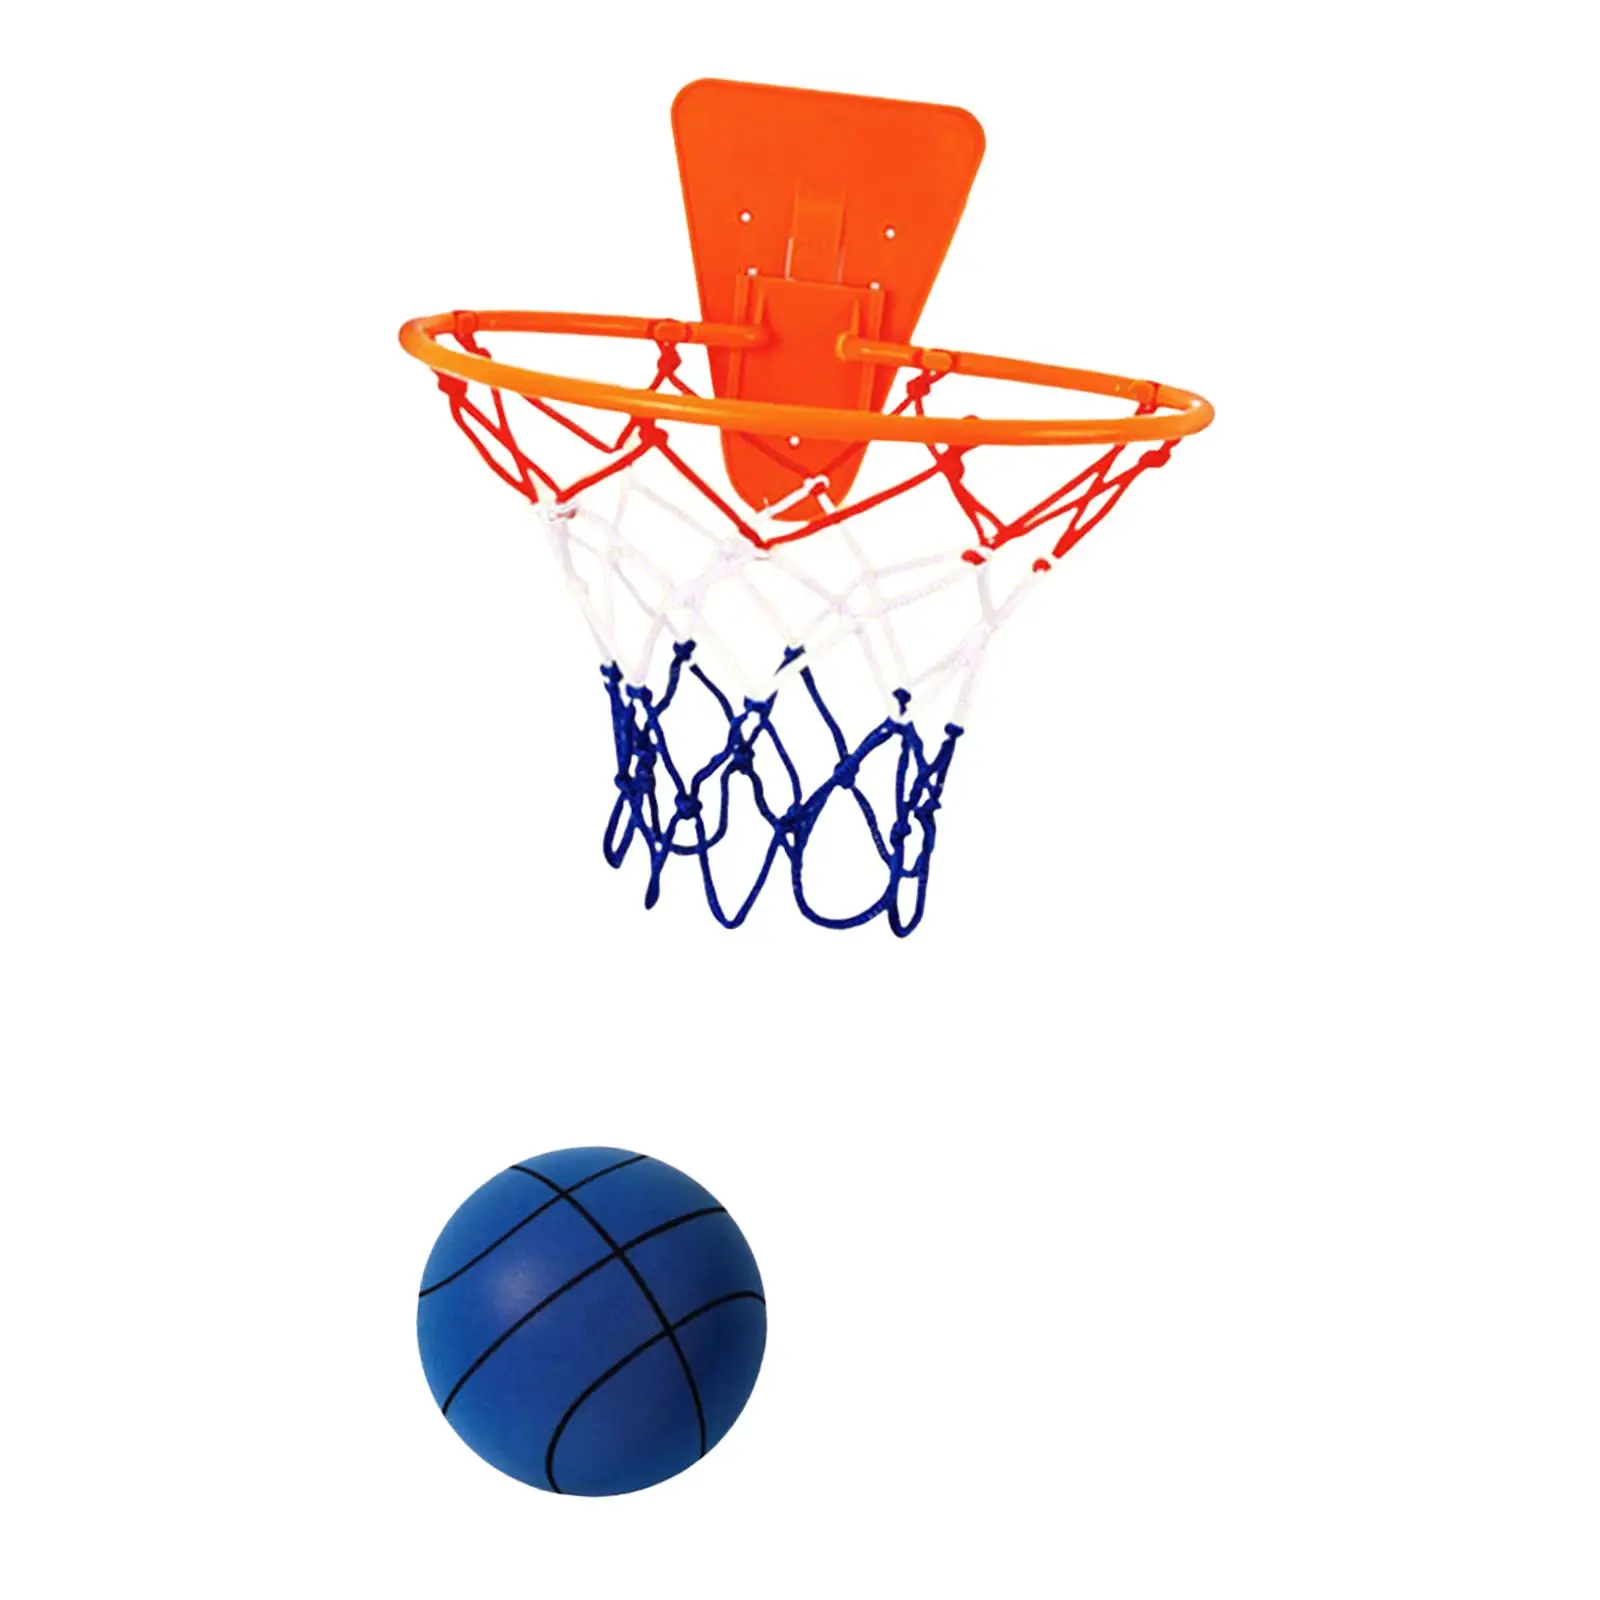 

Бесшумный баскетбольный мяч с кольцом сенсорный мячик, легкий обучающий мяч, тихий тренировочный мяч для помещений, бесшумный детский спортивный мяч